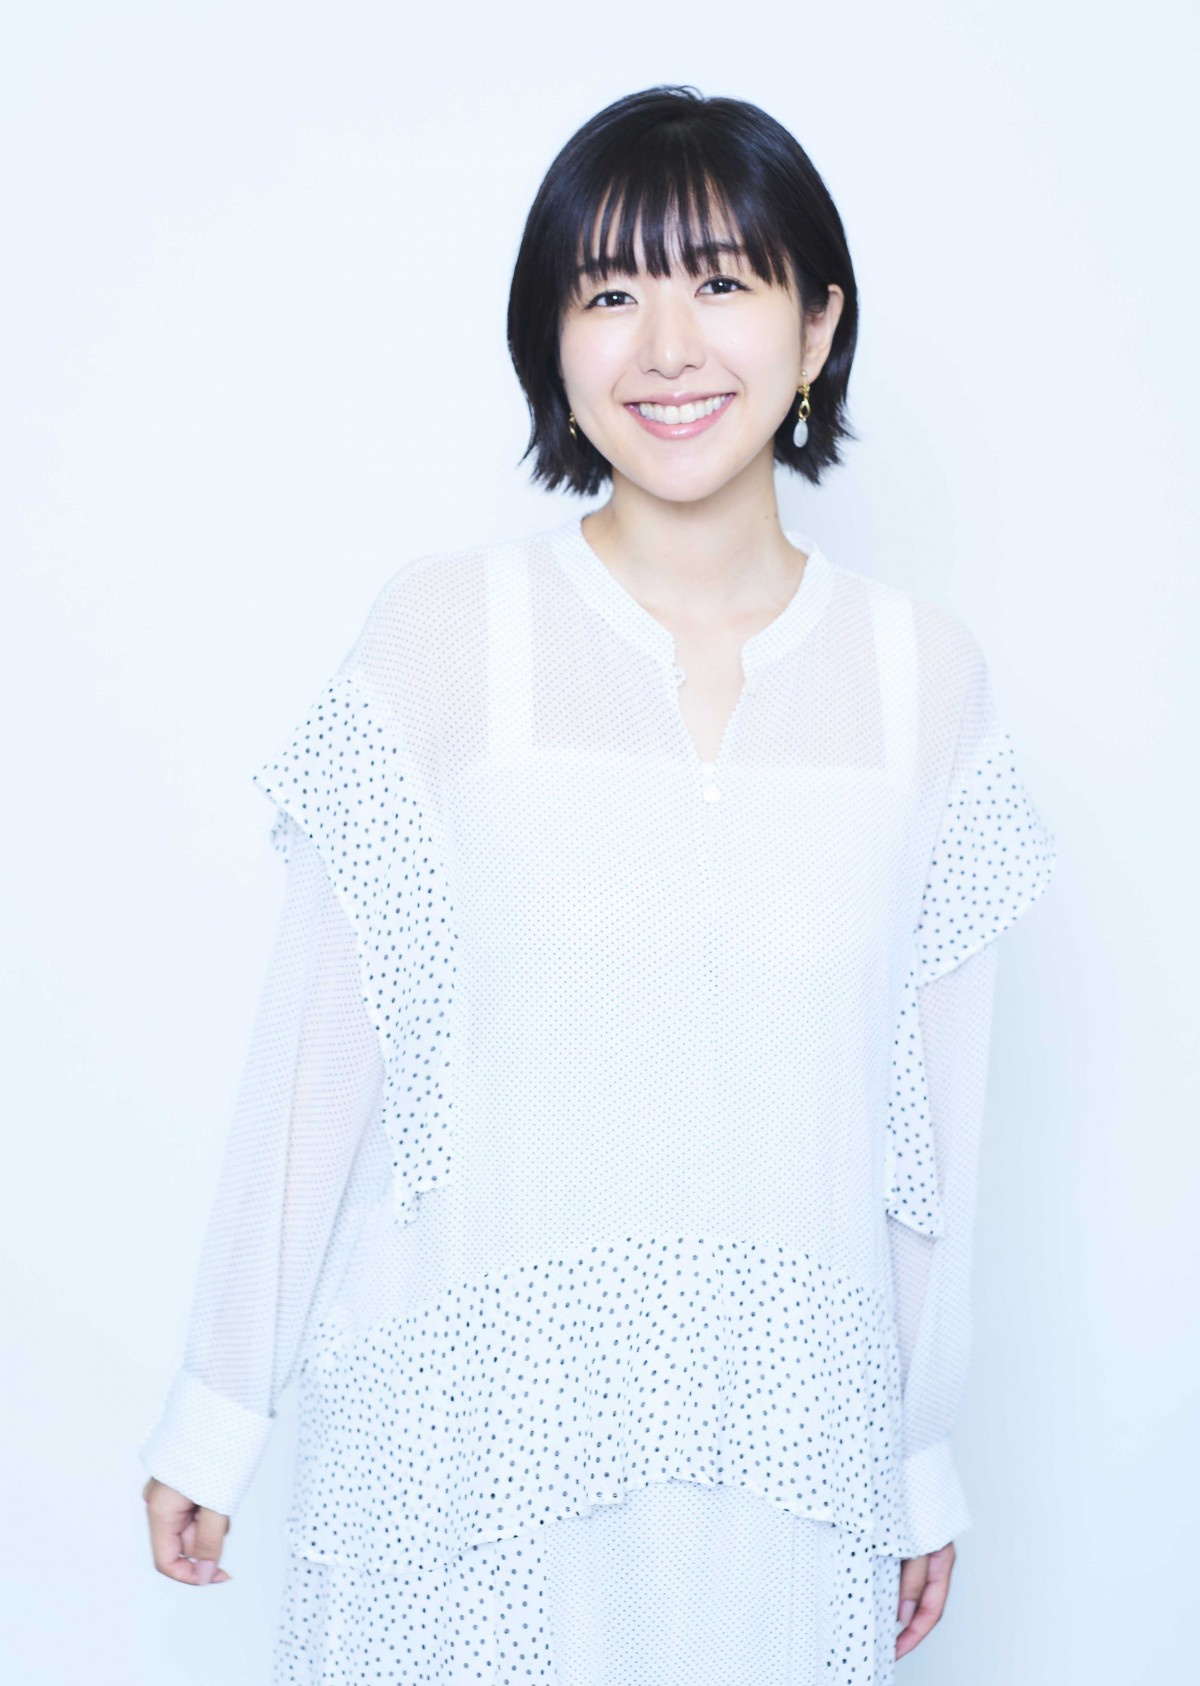 声優 茅野愛衣 糸電話 でファン交流が話題 コロナ対策のイベント企画で ママ 最高 Oricon News